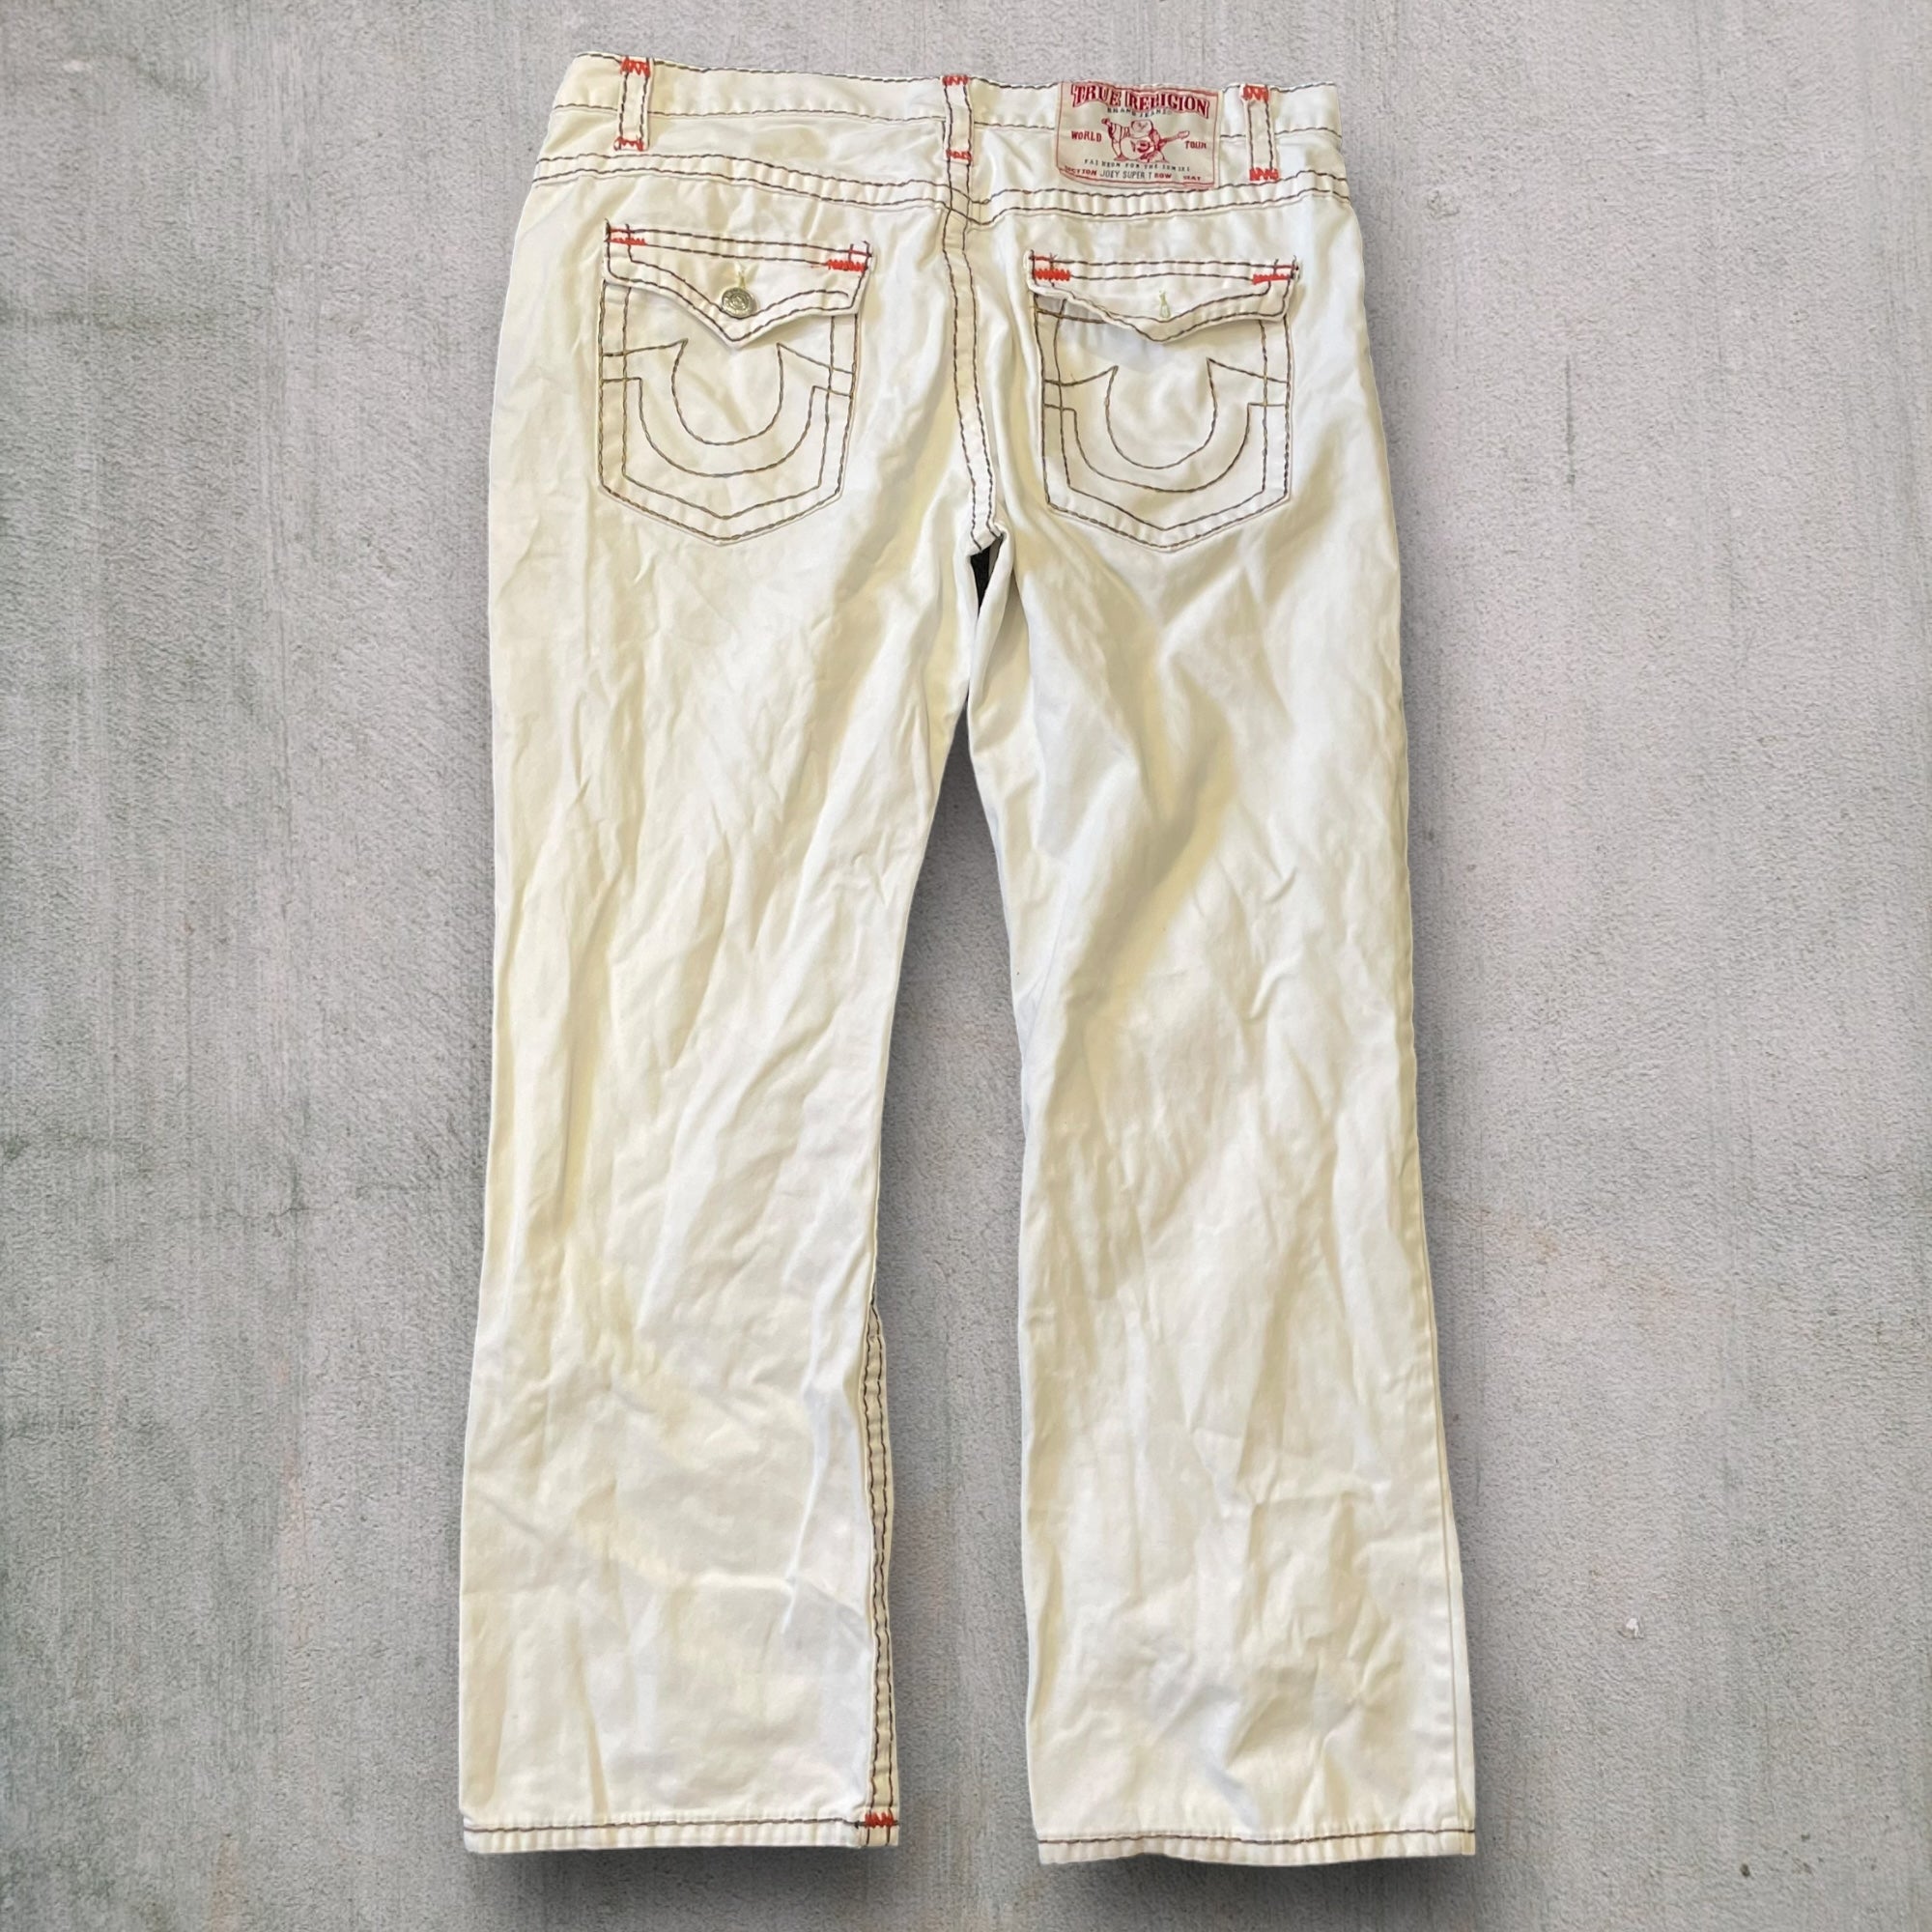 True Religion Joey Super T Jeans (40W) 796